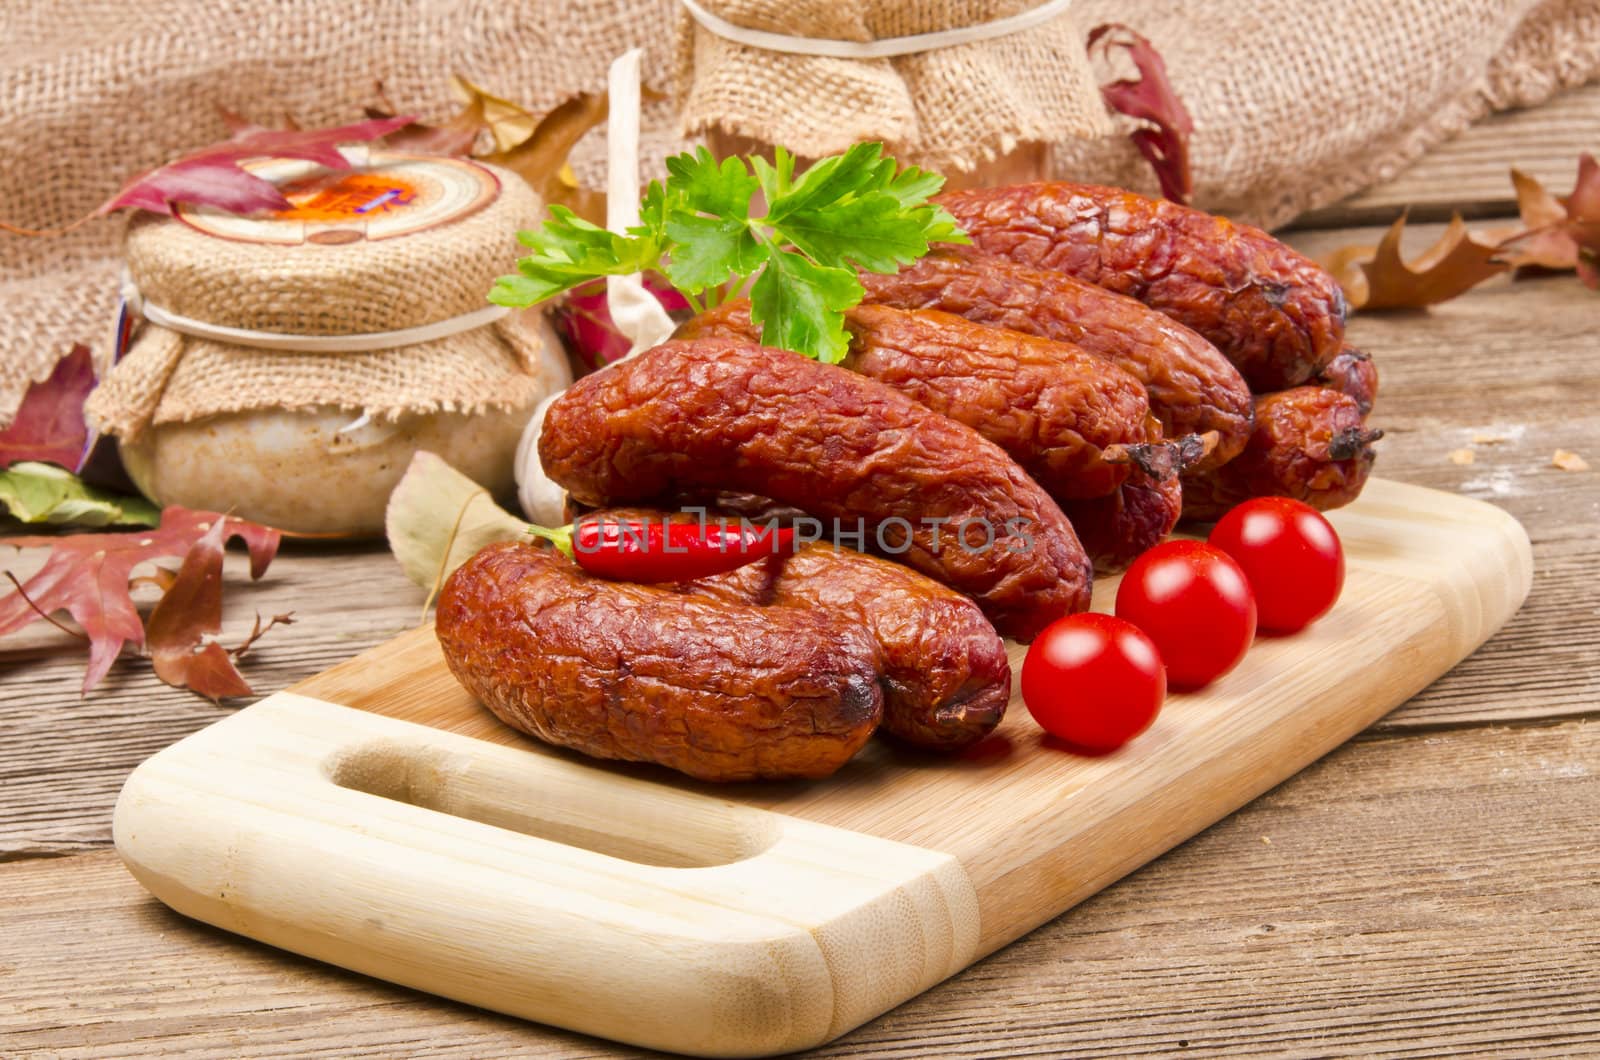 Polish junipers sausage by Darius.Dzinnik